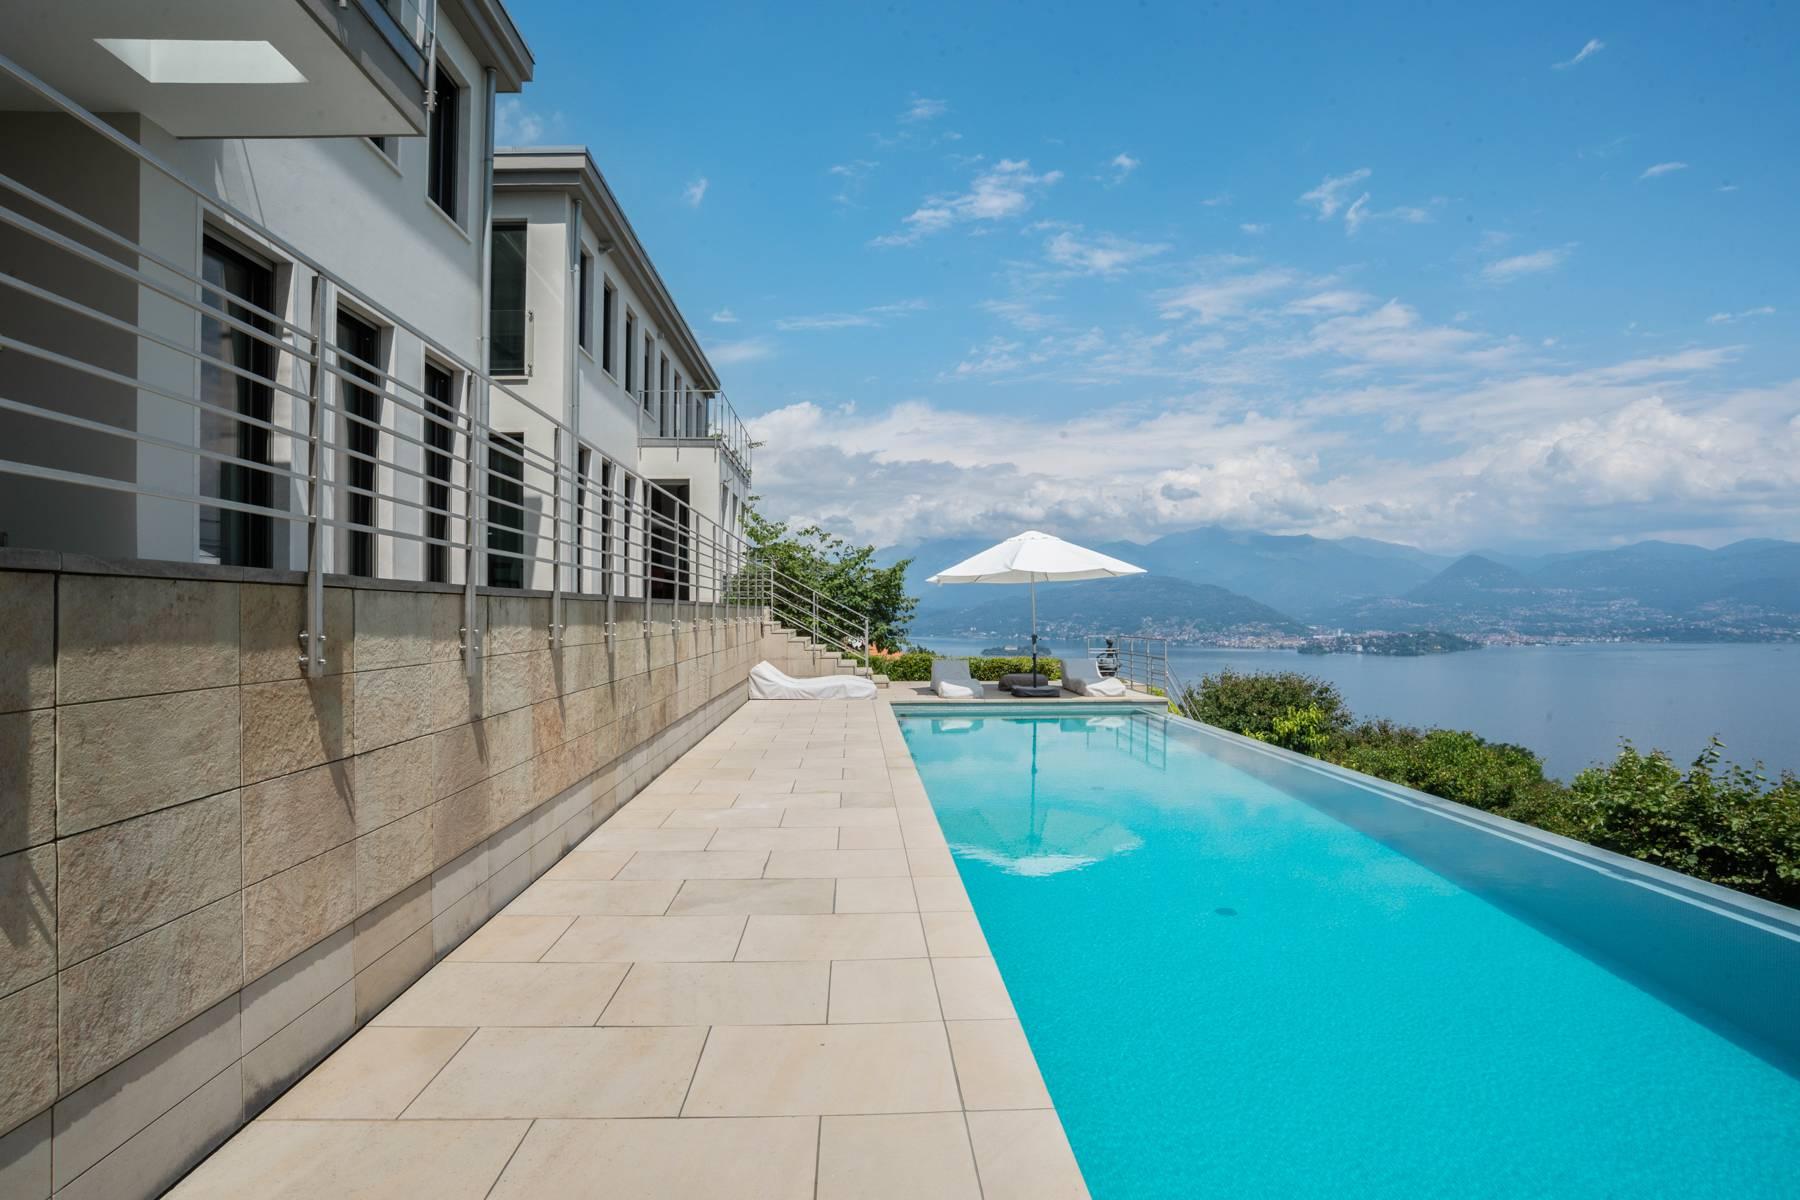 Fabulous Villa on the hills of Stresa - 1